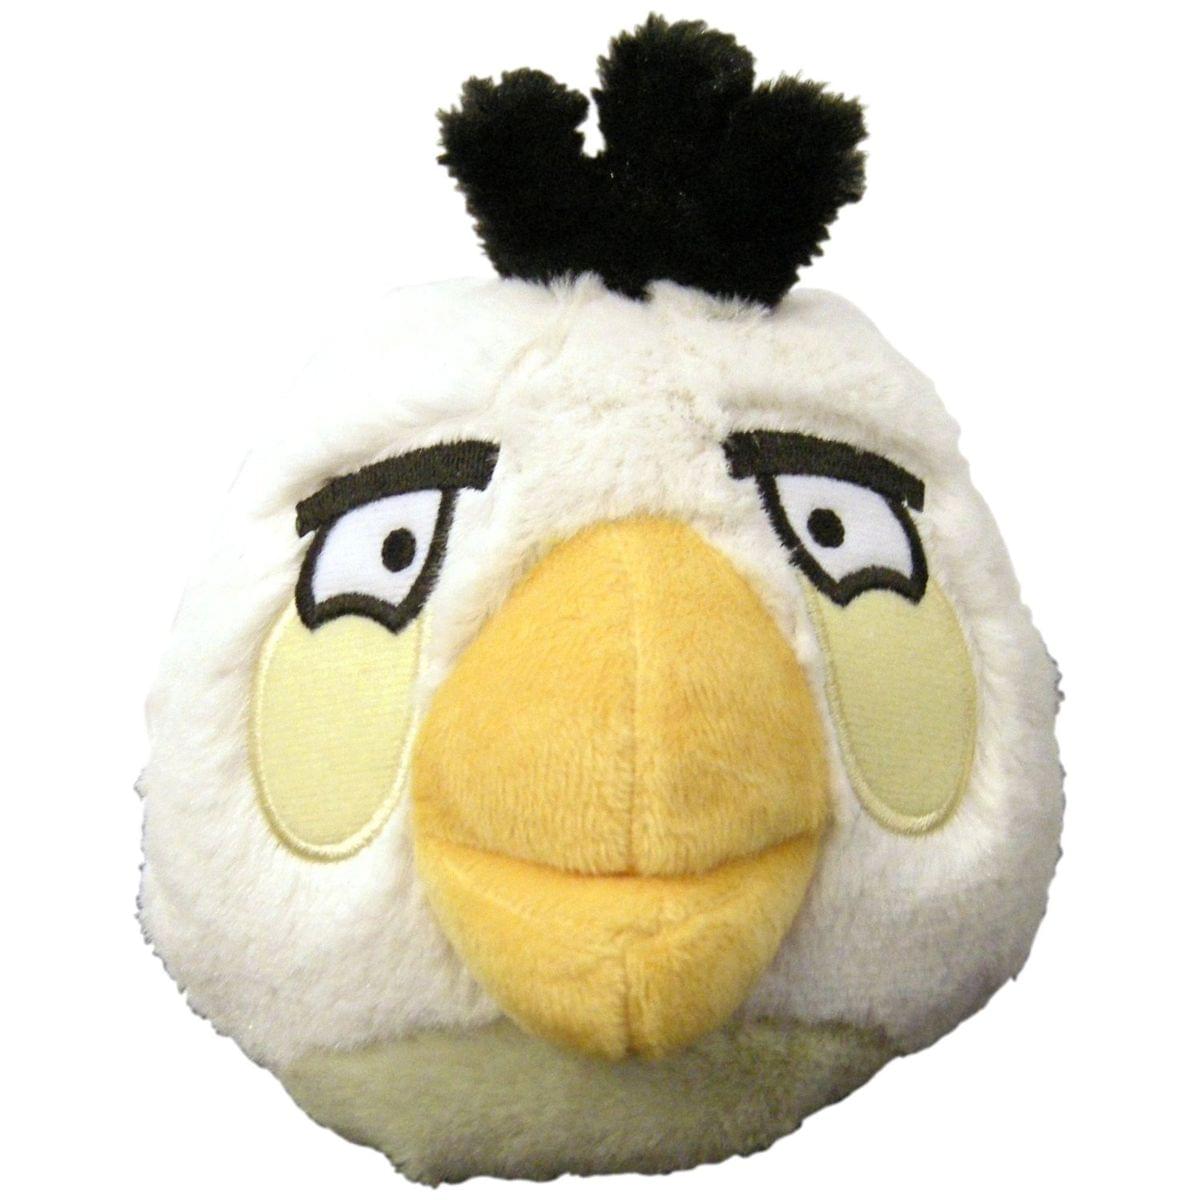 Angry Birds 5" Basic Plush White Bird